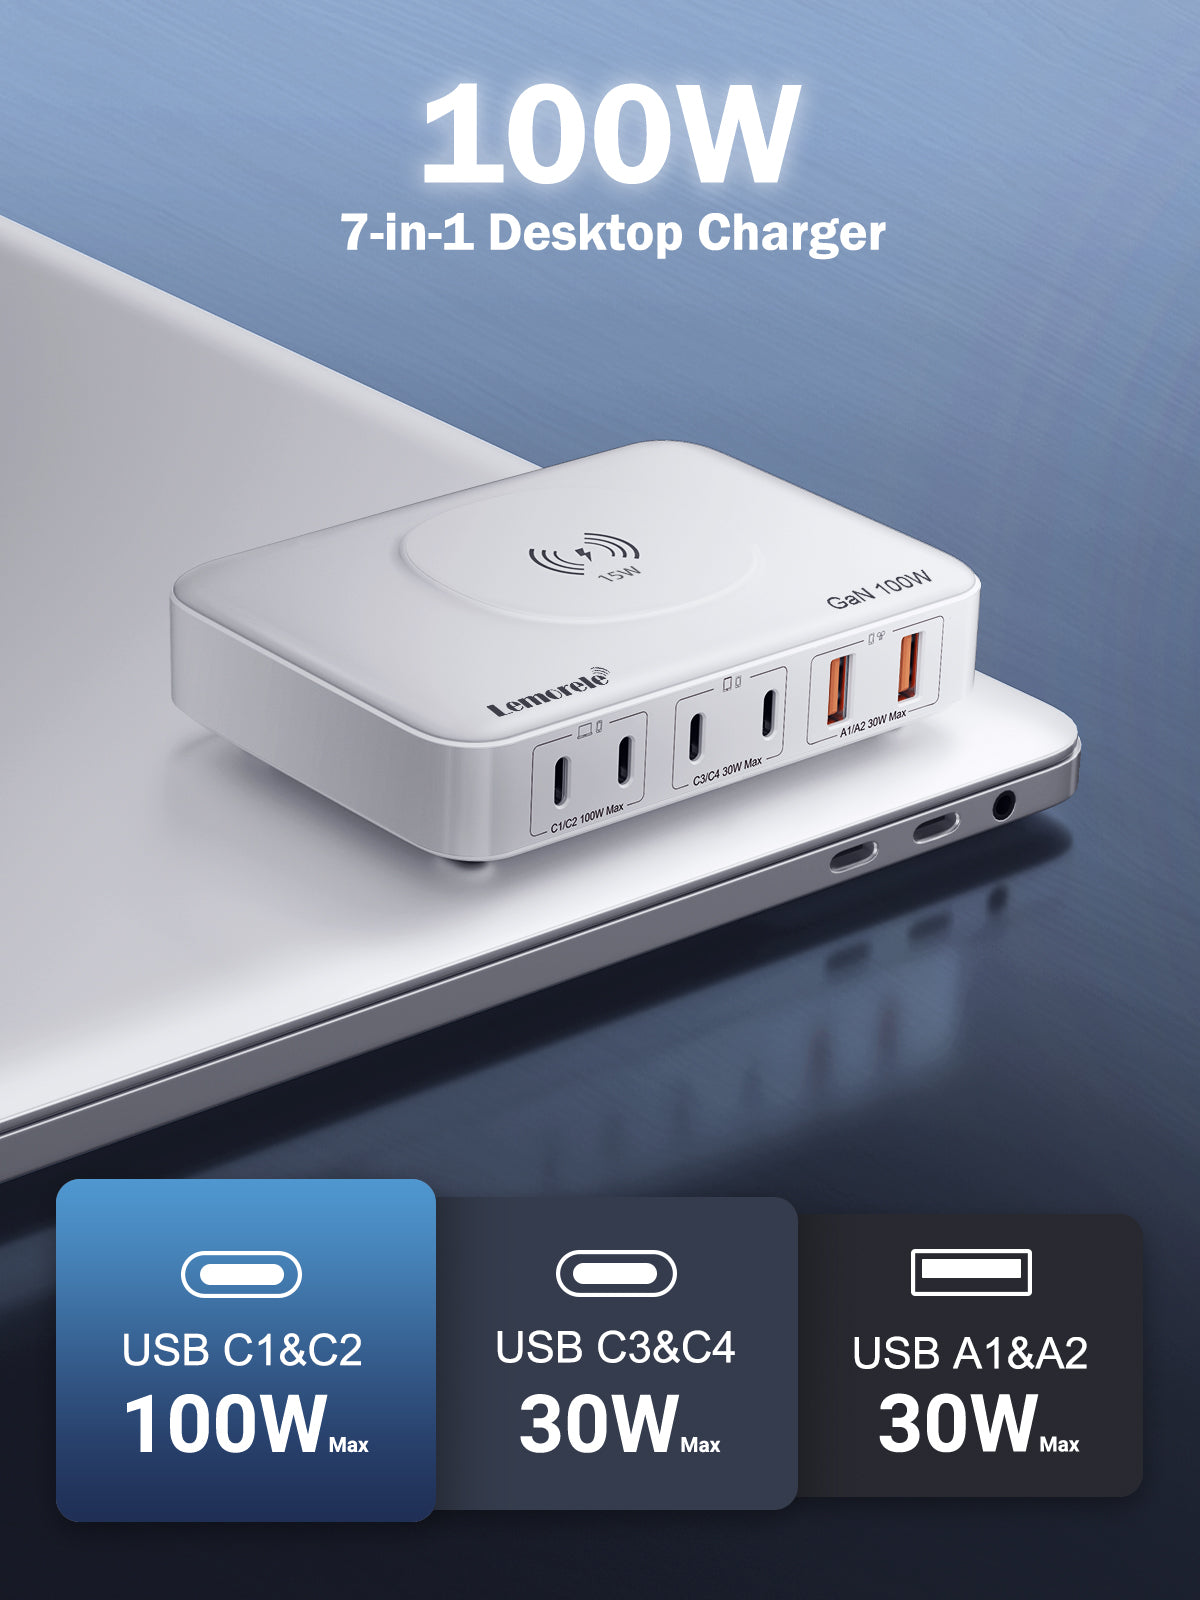 Lemorele Desktop multi-port charging 100W white 【PQ1006D】